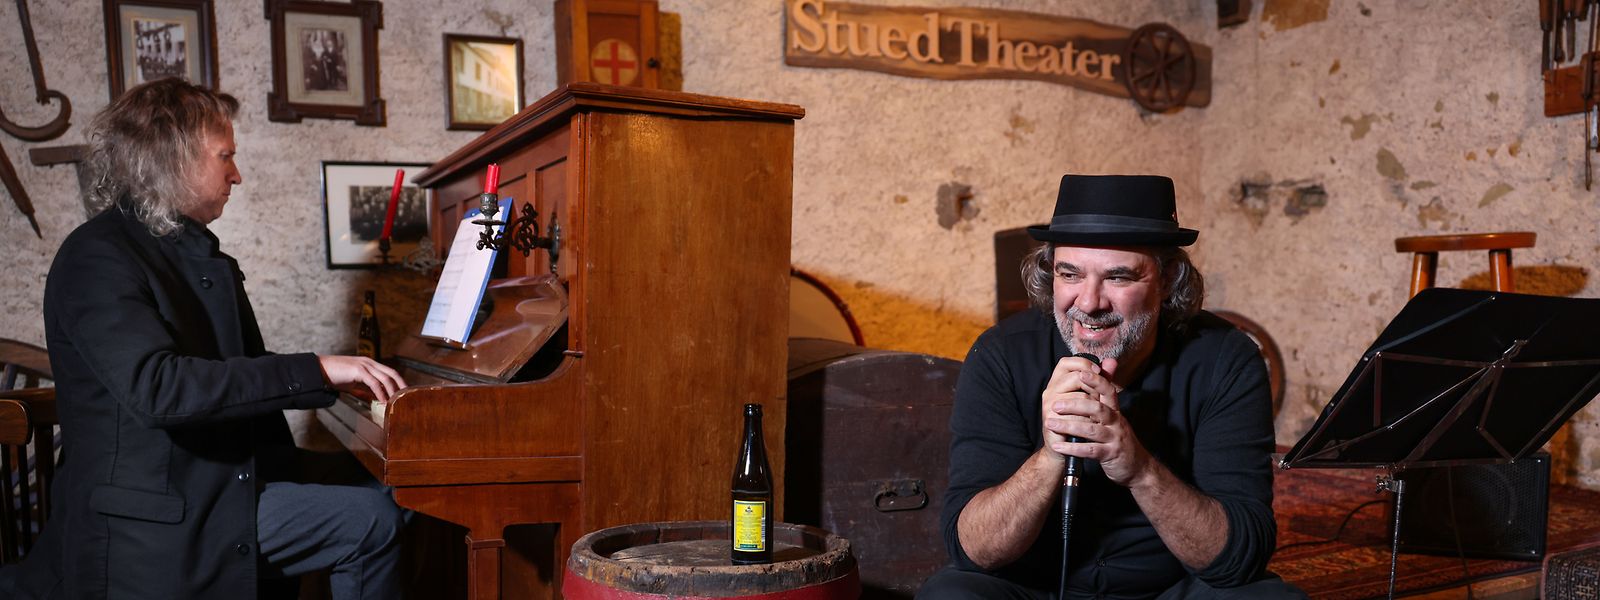 Georges Urwald (l.) und Serge Tonnar, Klavier und Stimme, eine Flasche Bier oder ein Glas Wein, ein Liederabend in einer alten urigen Werkstatt am Moselgestade in Grevenmacher.